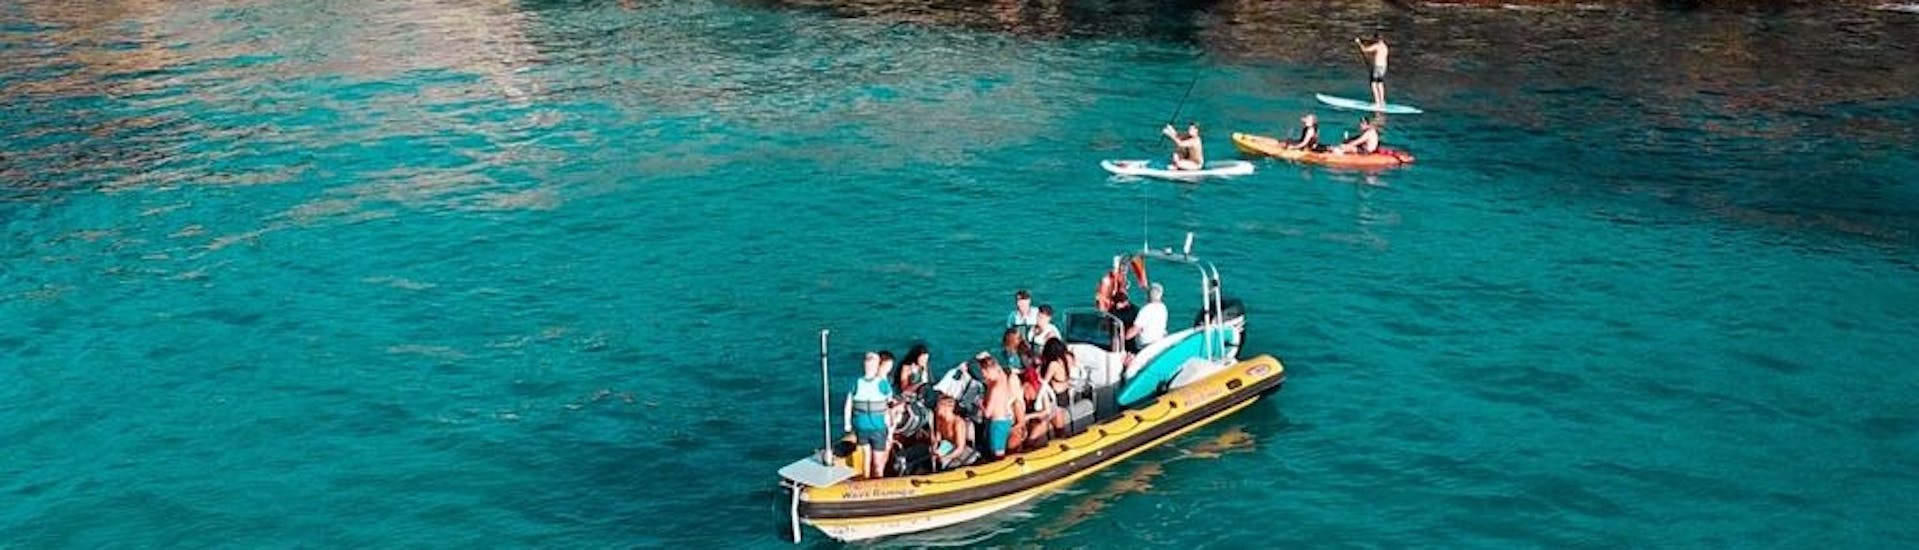 Participantes en una lancha rápida parando para nadar en las aguas turquesas de la bahía de Alcudia durante un viaje en barco desde Can Picafort hasta el Parque Natural de Llevant con North Coast Adventure Mallorca.